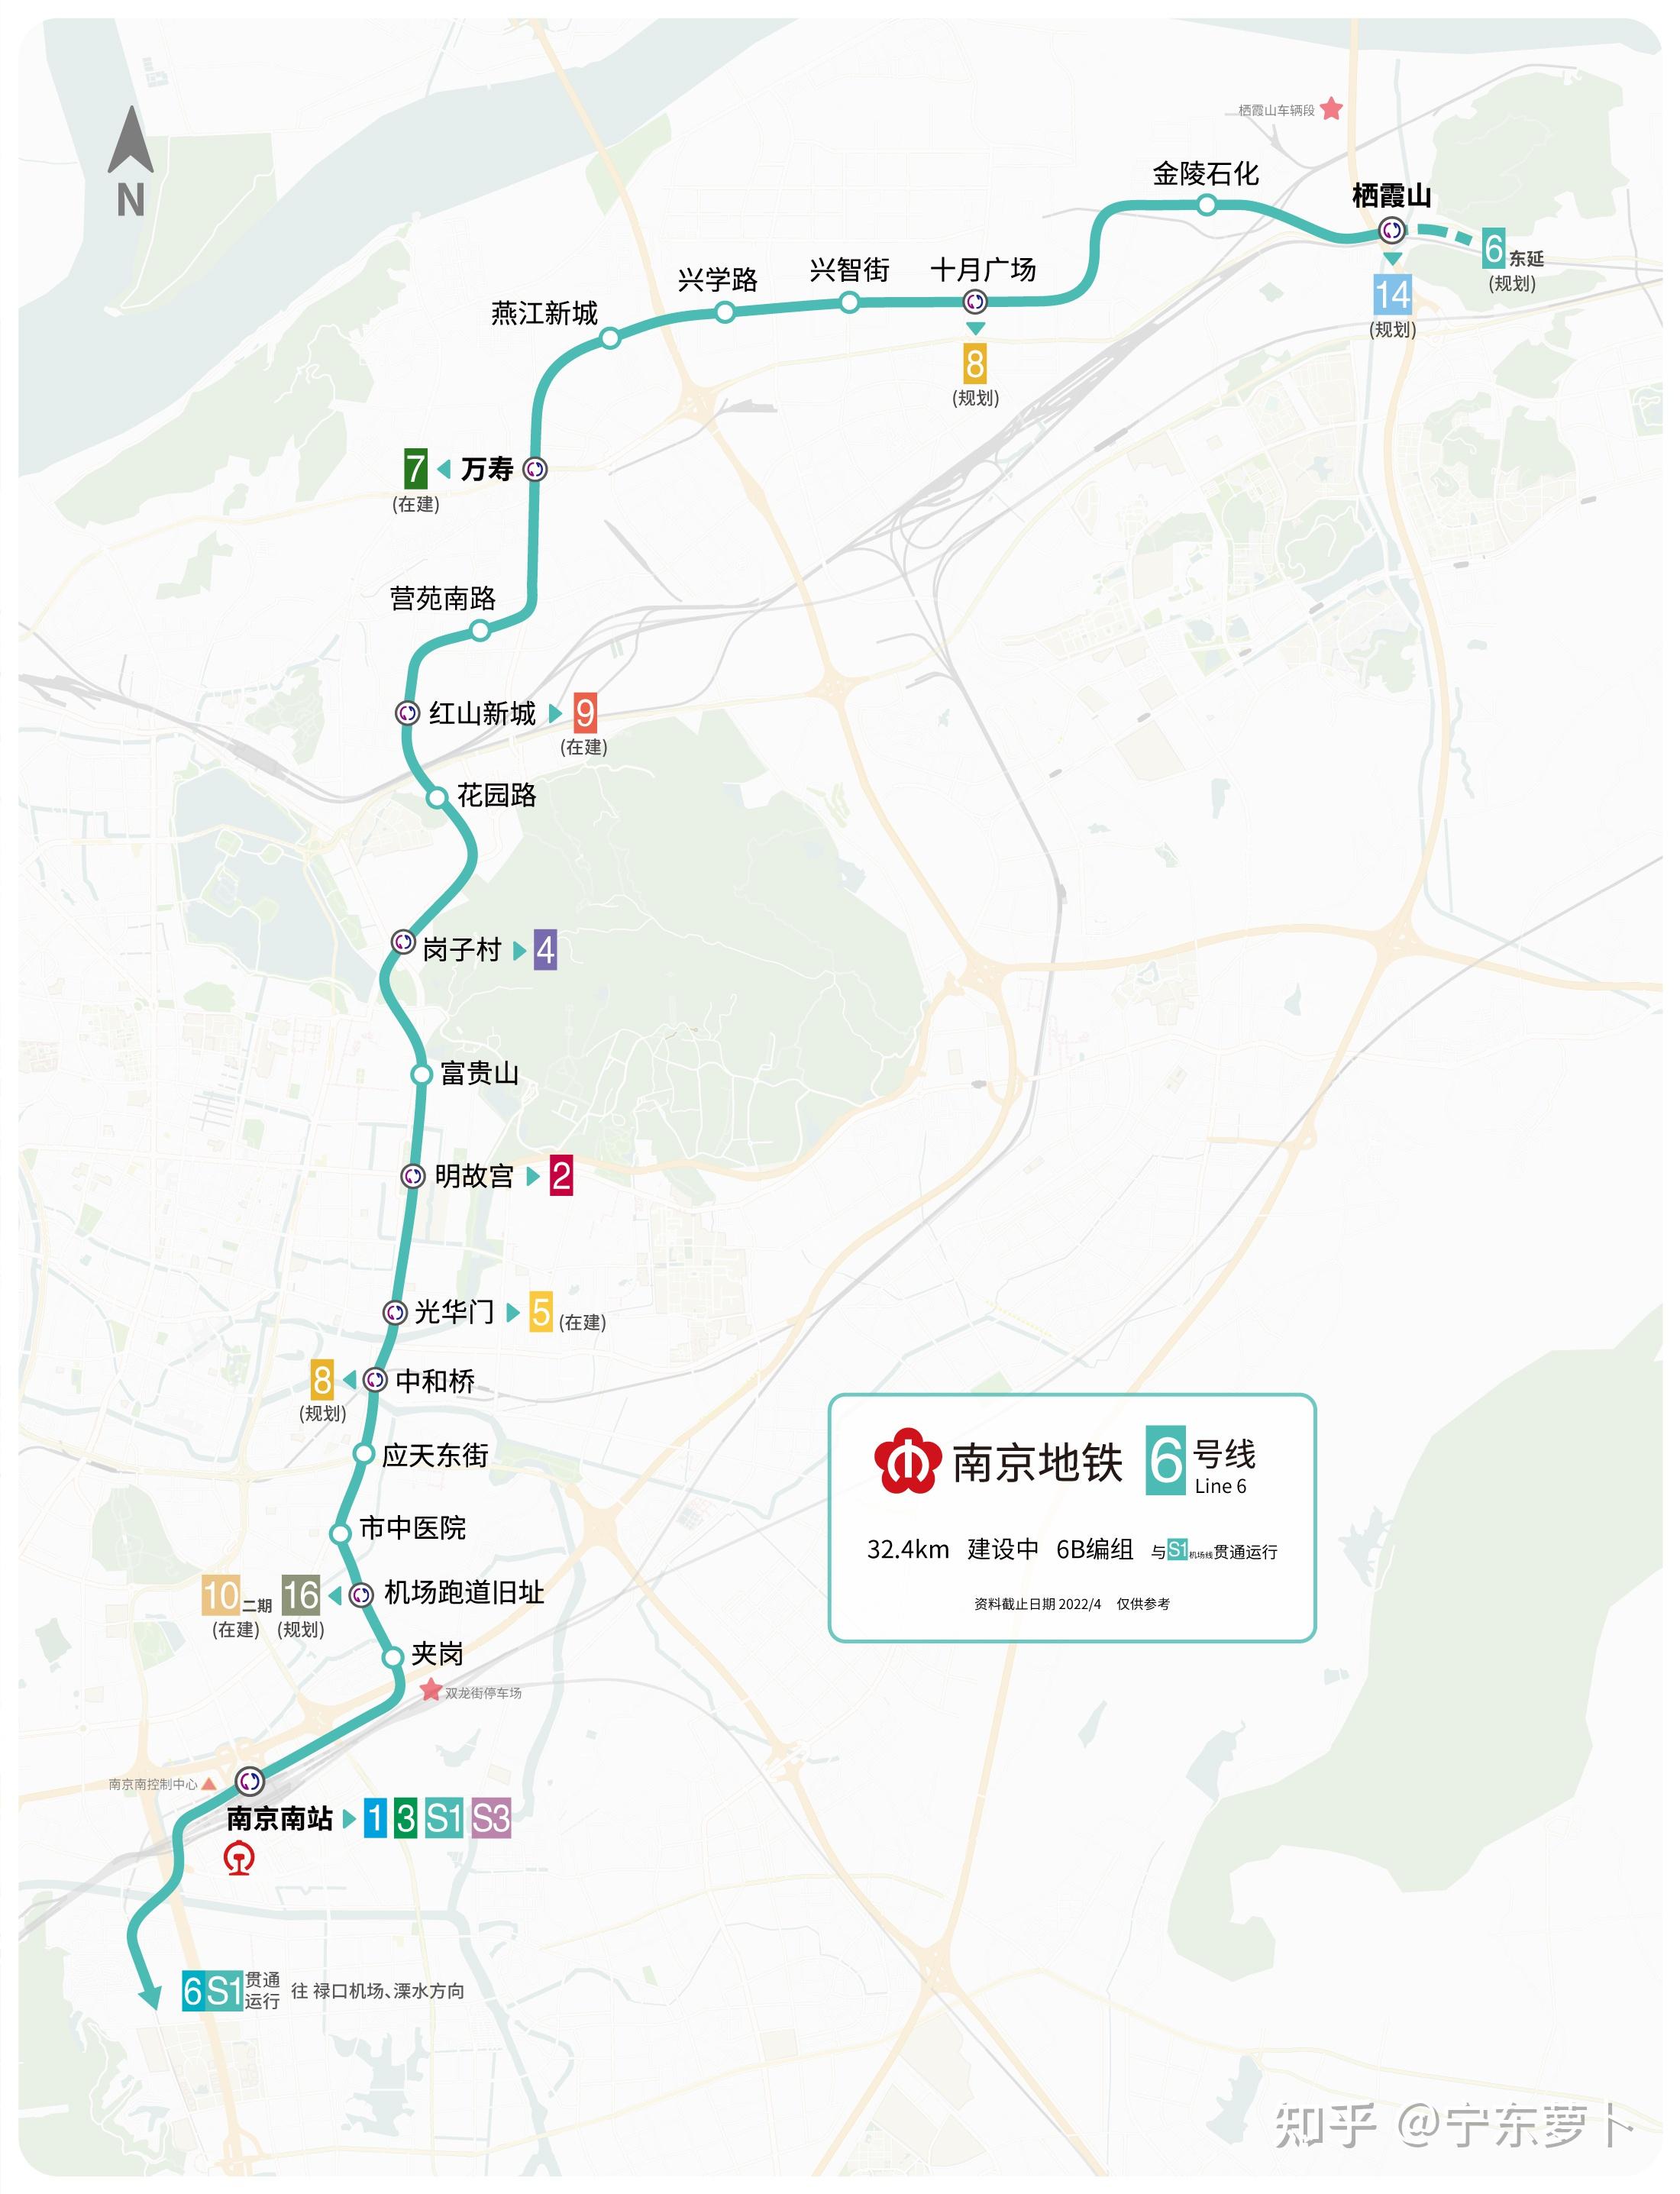 南京地铁远期线网规划图2035 及各条线路建设规划情况介绍 v1